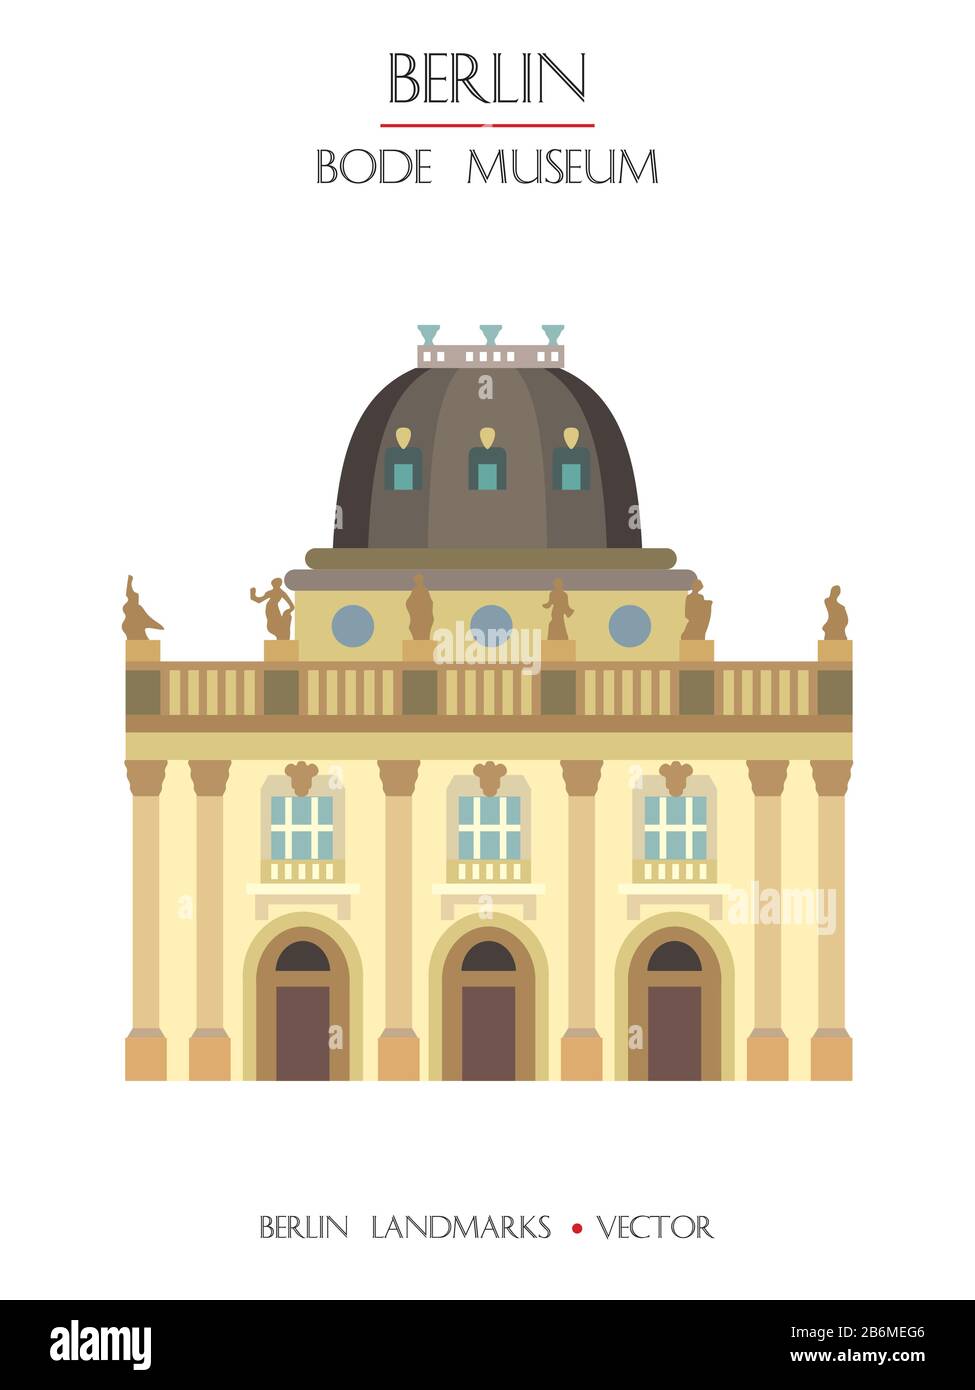 Variopinto vettore Bode Museum vista frontale, famoso punto di riferimento di Berlino, Germania. Immagine piatta verticale vettoriale isolata su sfondo bianco. Berlino tra Illustrazione Vettoriale